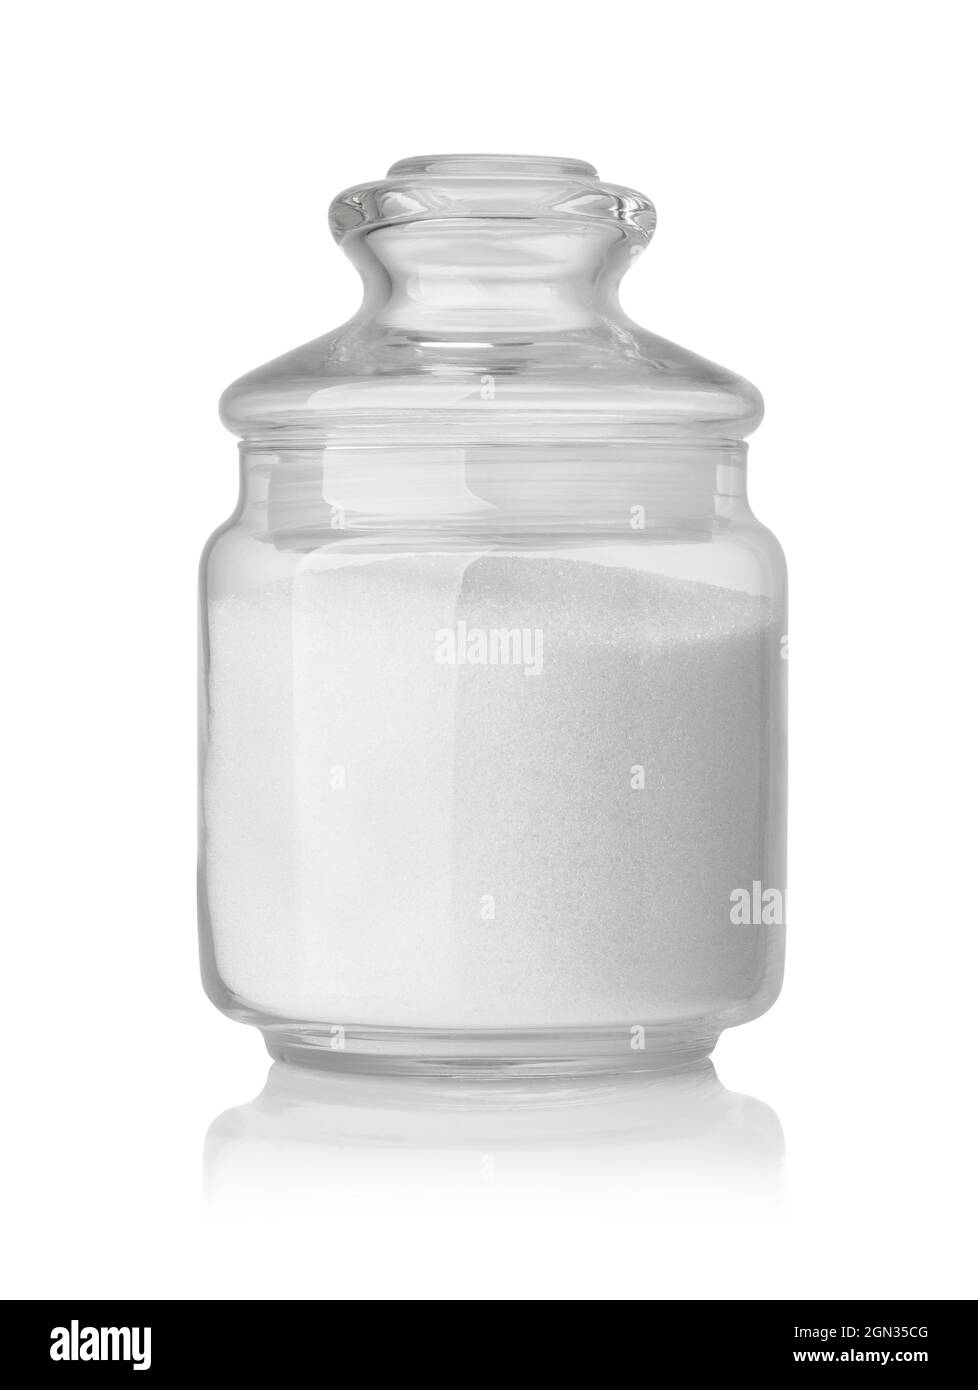 Vue avant du sucre granulé raffiné dans un pot en verre isolé sur du blanc Banque D'Images